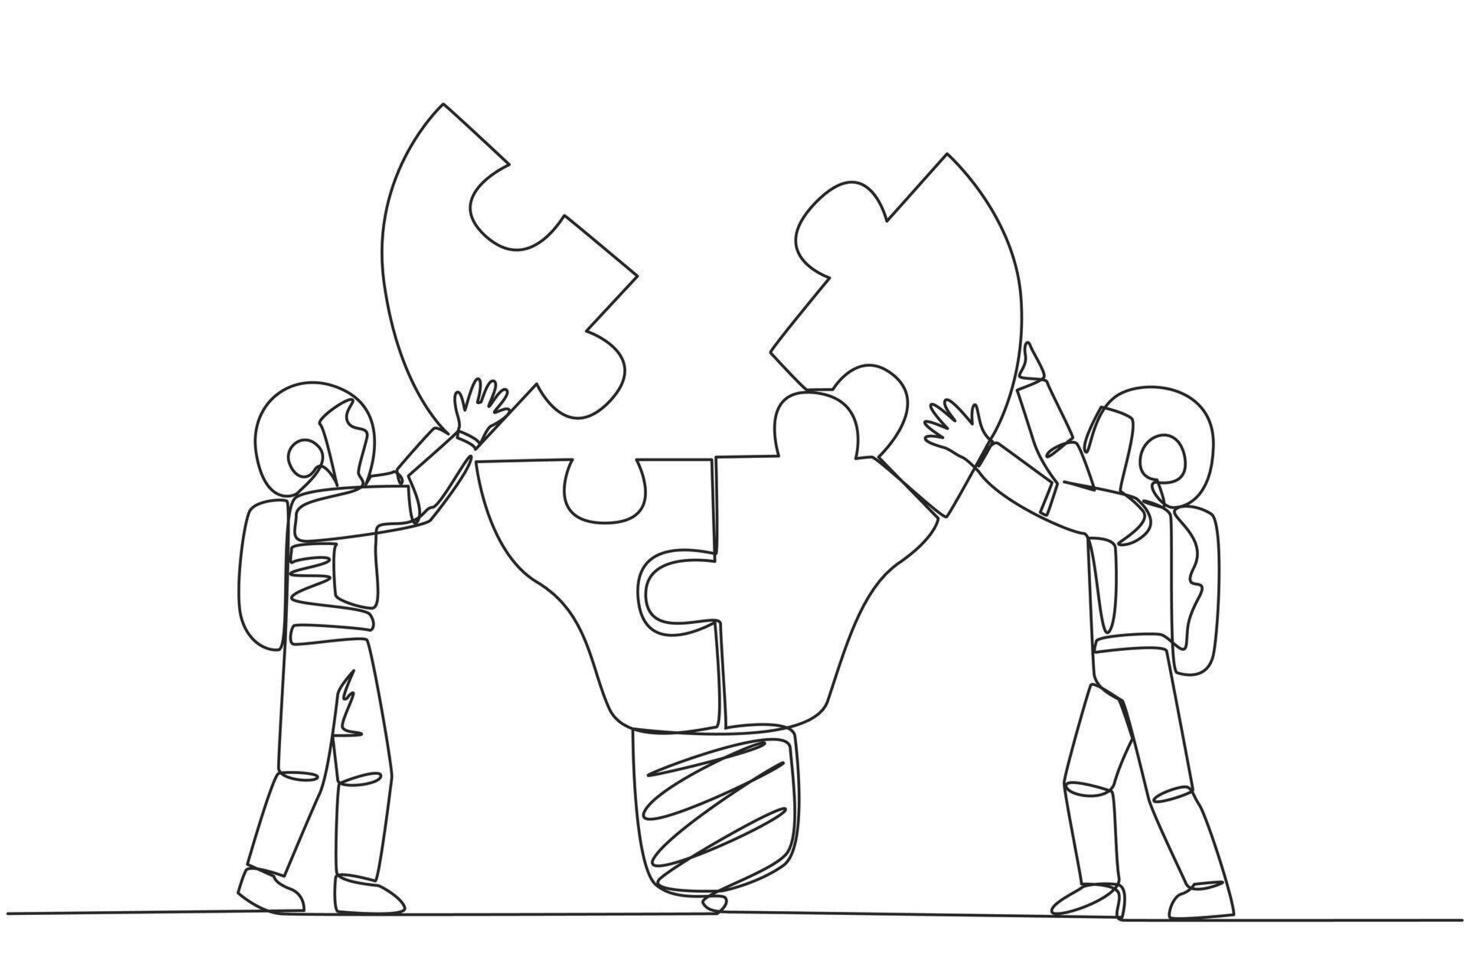 Single einer Linie Zeichnung zwei Astronauten Arbeit im Teams zu Komplett ein Glühbirne oben Puzzle. Arbeiten zusammen zu produzieren brillant Ideen. Zusammenarbeit auf Raum. kontinuierlich Linie Design Grafik Illustration vektor